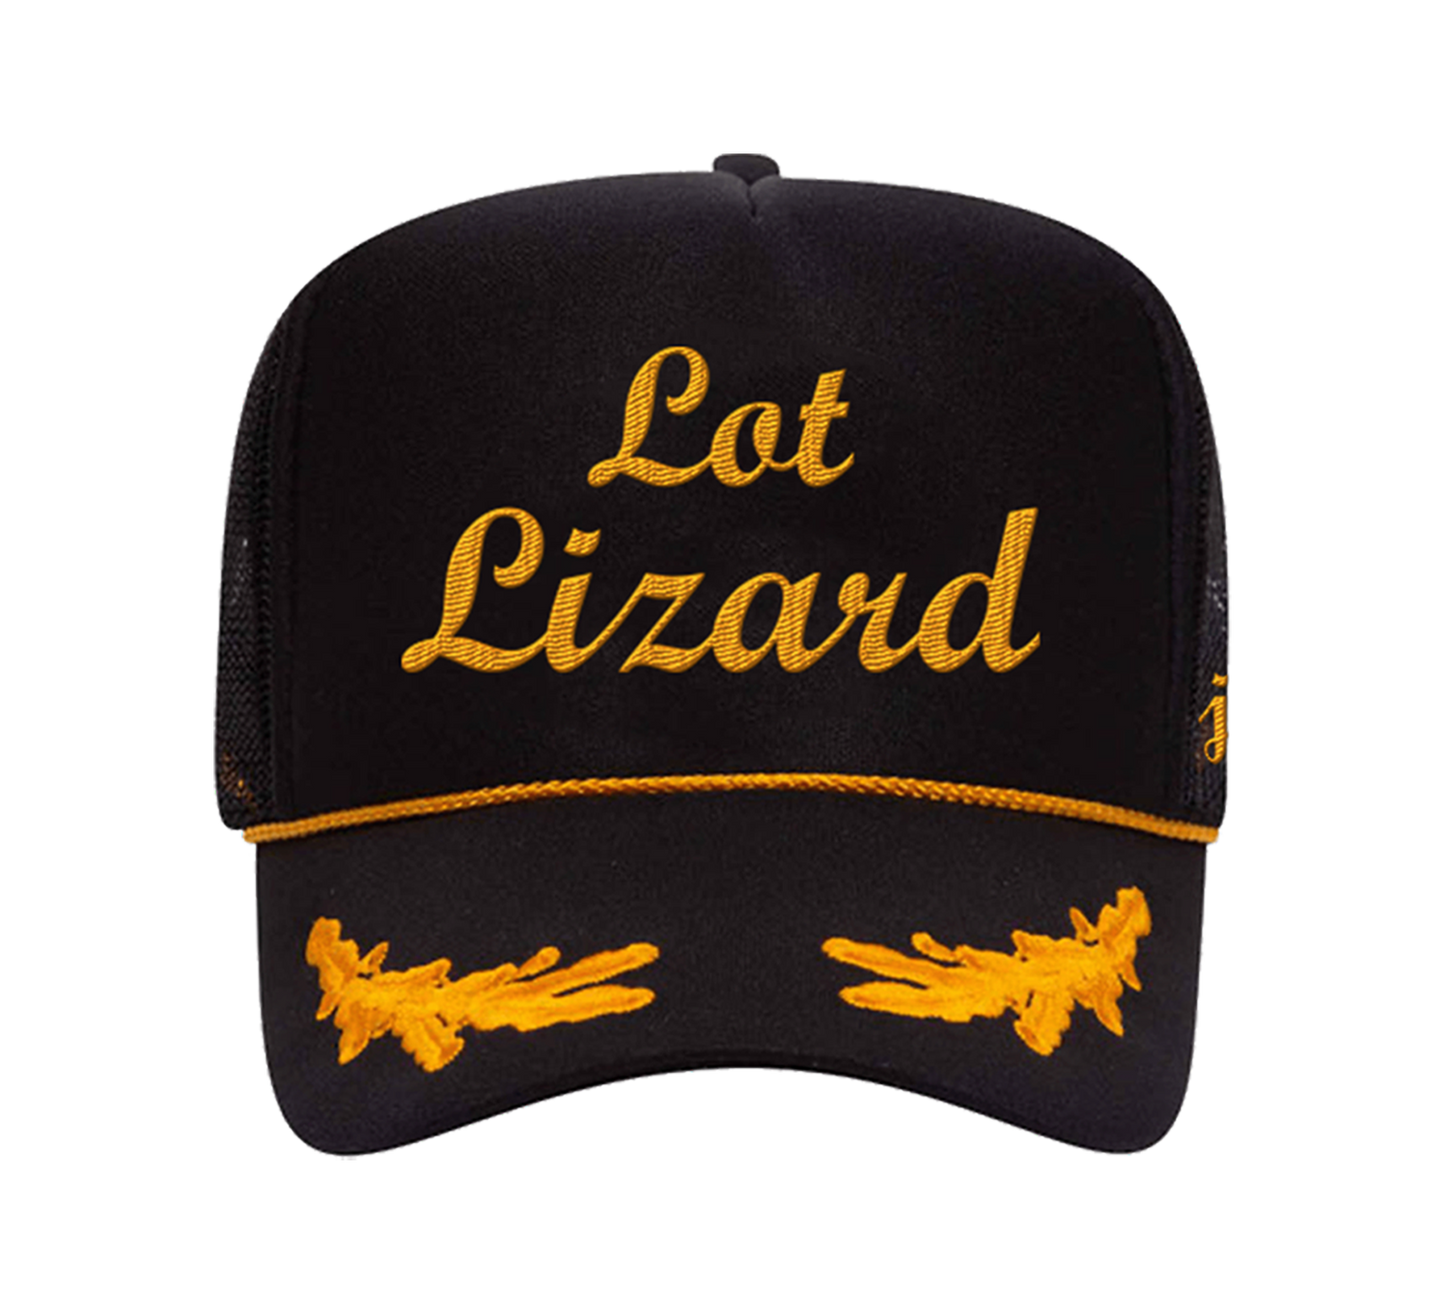 Lot Lizard Hat